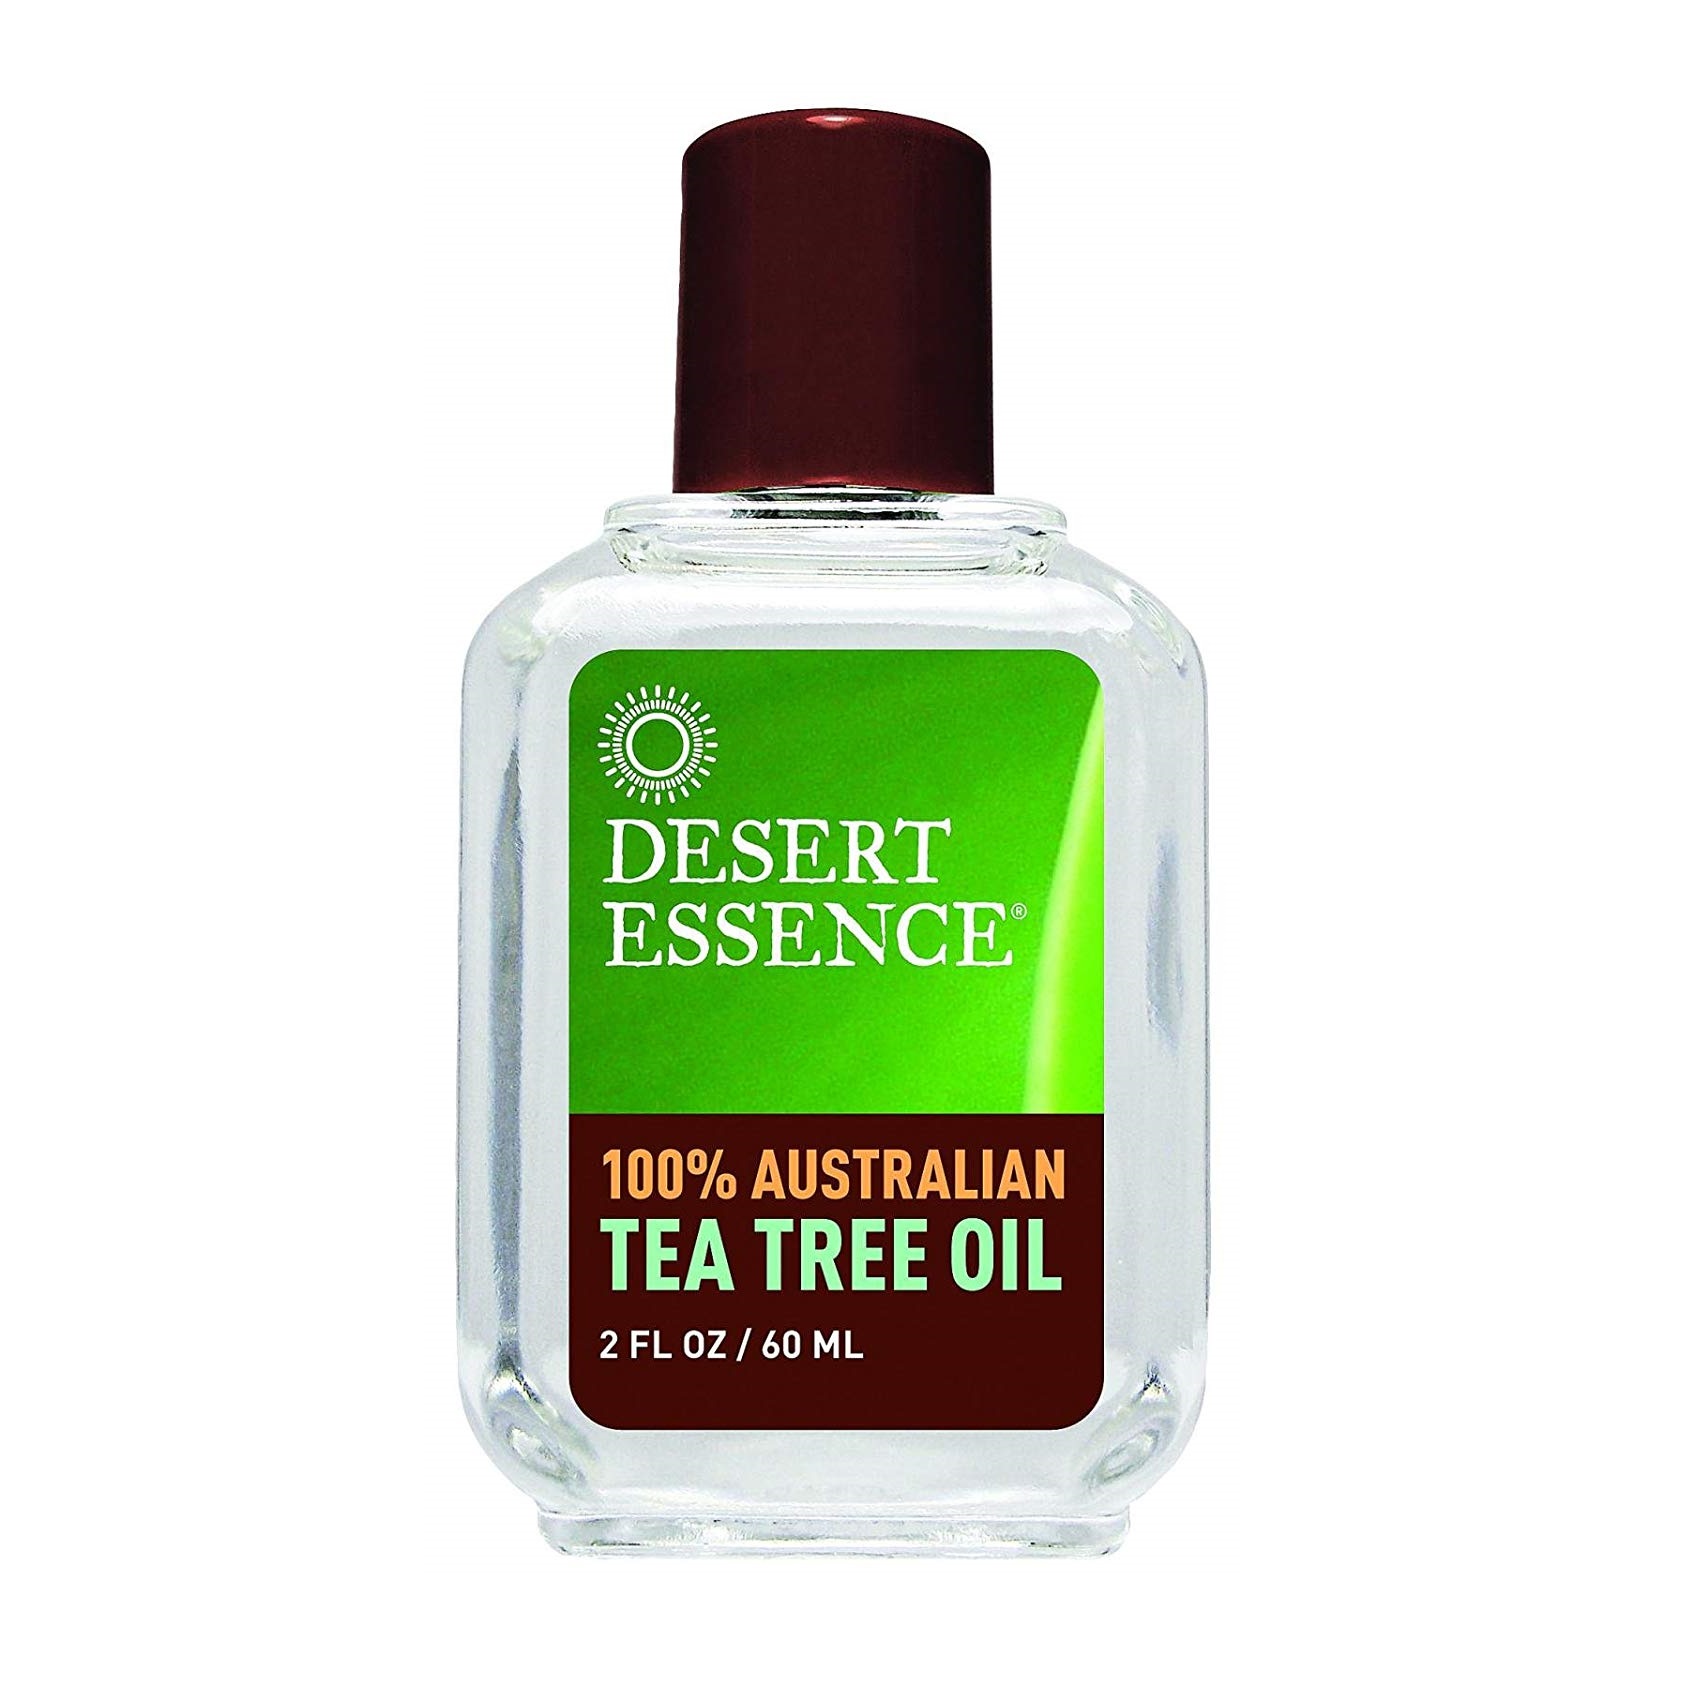 데져트 에센스, 100% 오스트레일리아 티트리 오일, 2 fl oz (60 ml)